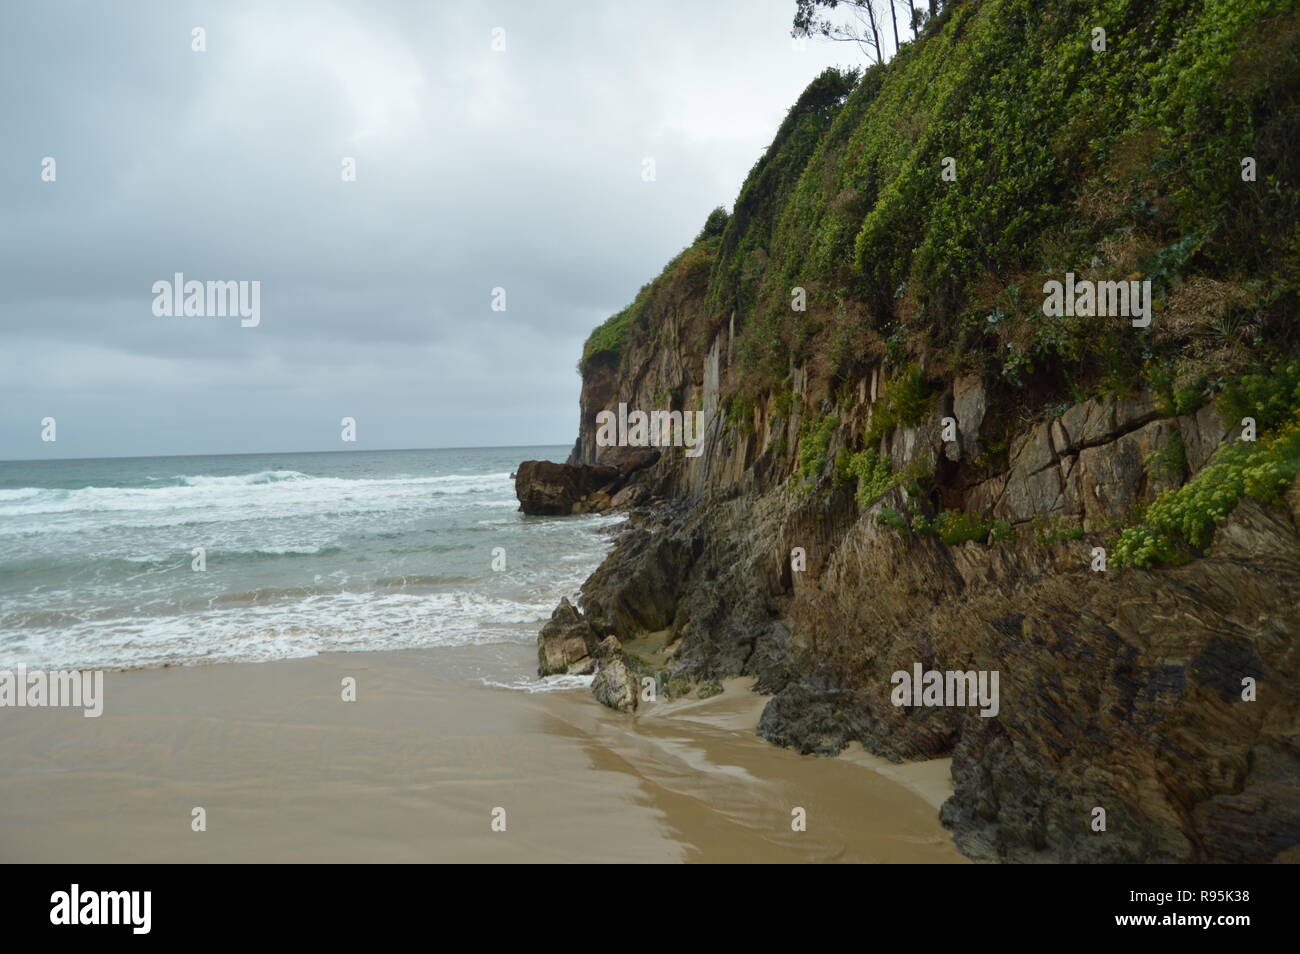 Schönen grünen Felsen am Strand von El Aguilar an einem regnerischen Tag. Juli 29, 2015. Landschaften, Natur, Reisen. Muros De Nalon, Asturien, Spanien. Stockfoto